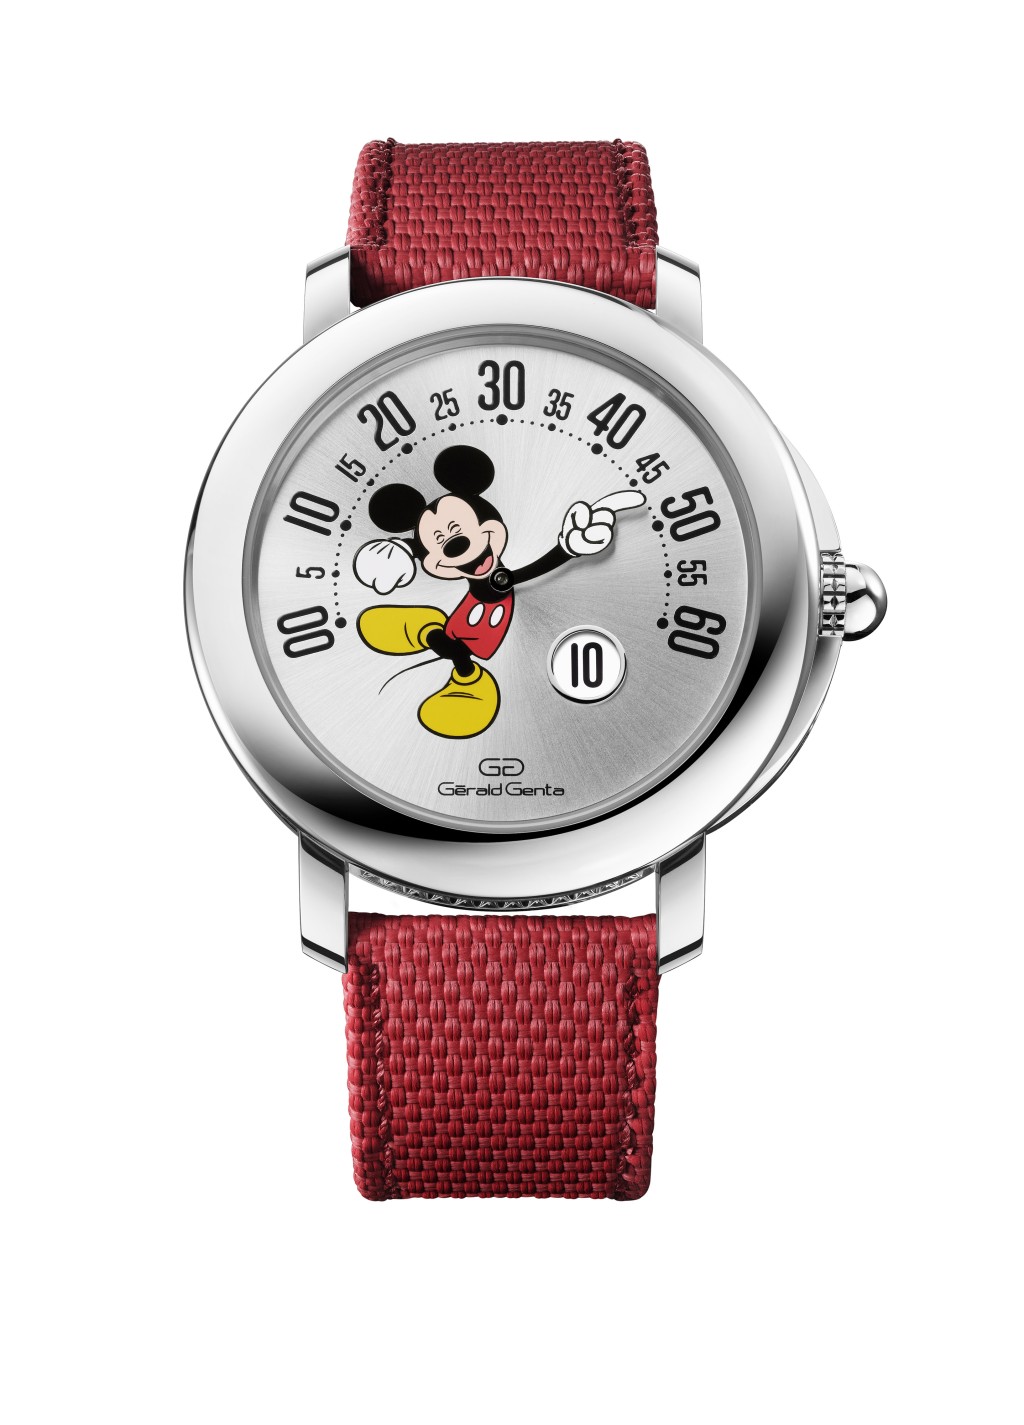 Gerald Genta今年复刻了经典的米奇老鼠表，手臂会以210度逆跳方式显示分钟，限量150枚，售16,500欧元。